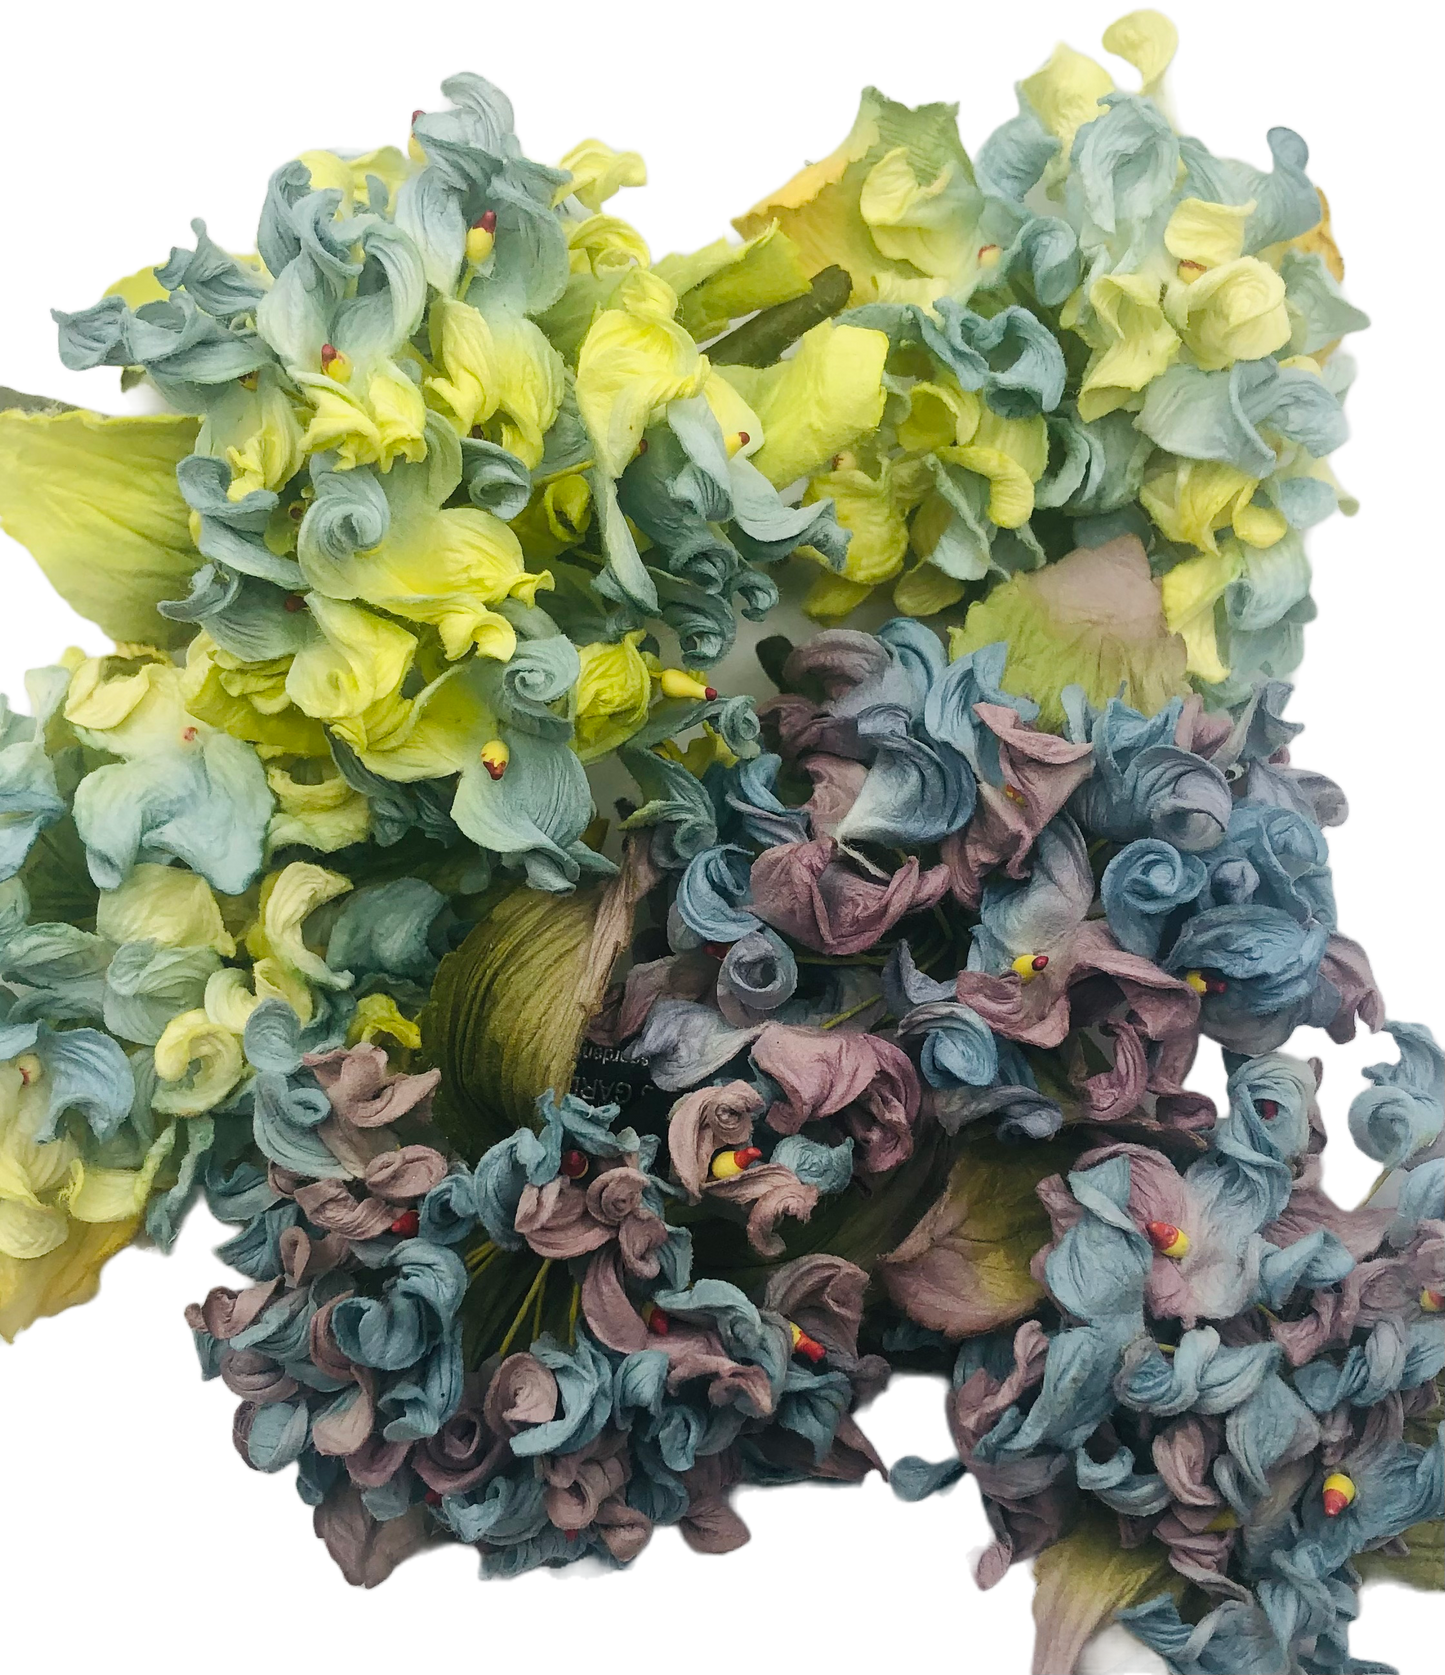 Karin's Garden Broche en forme de fleur d'hortensia de 10,2 cm